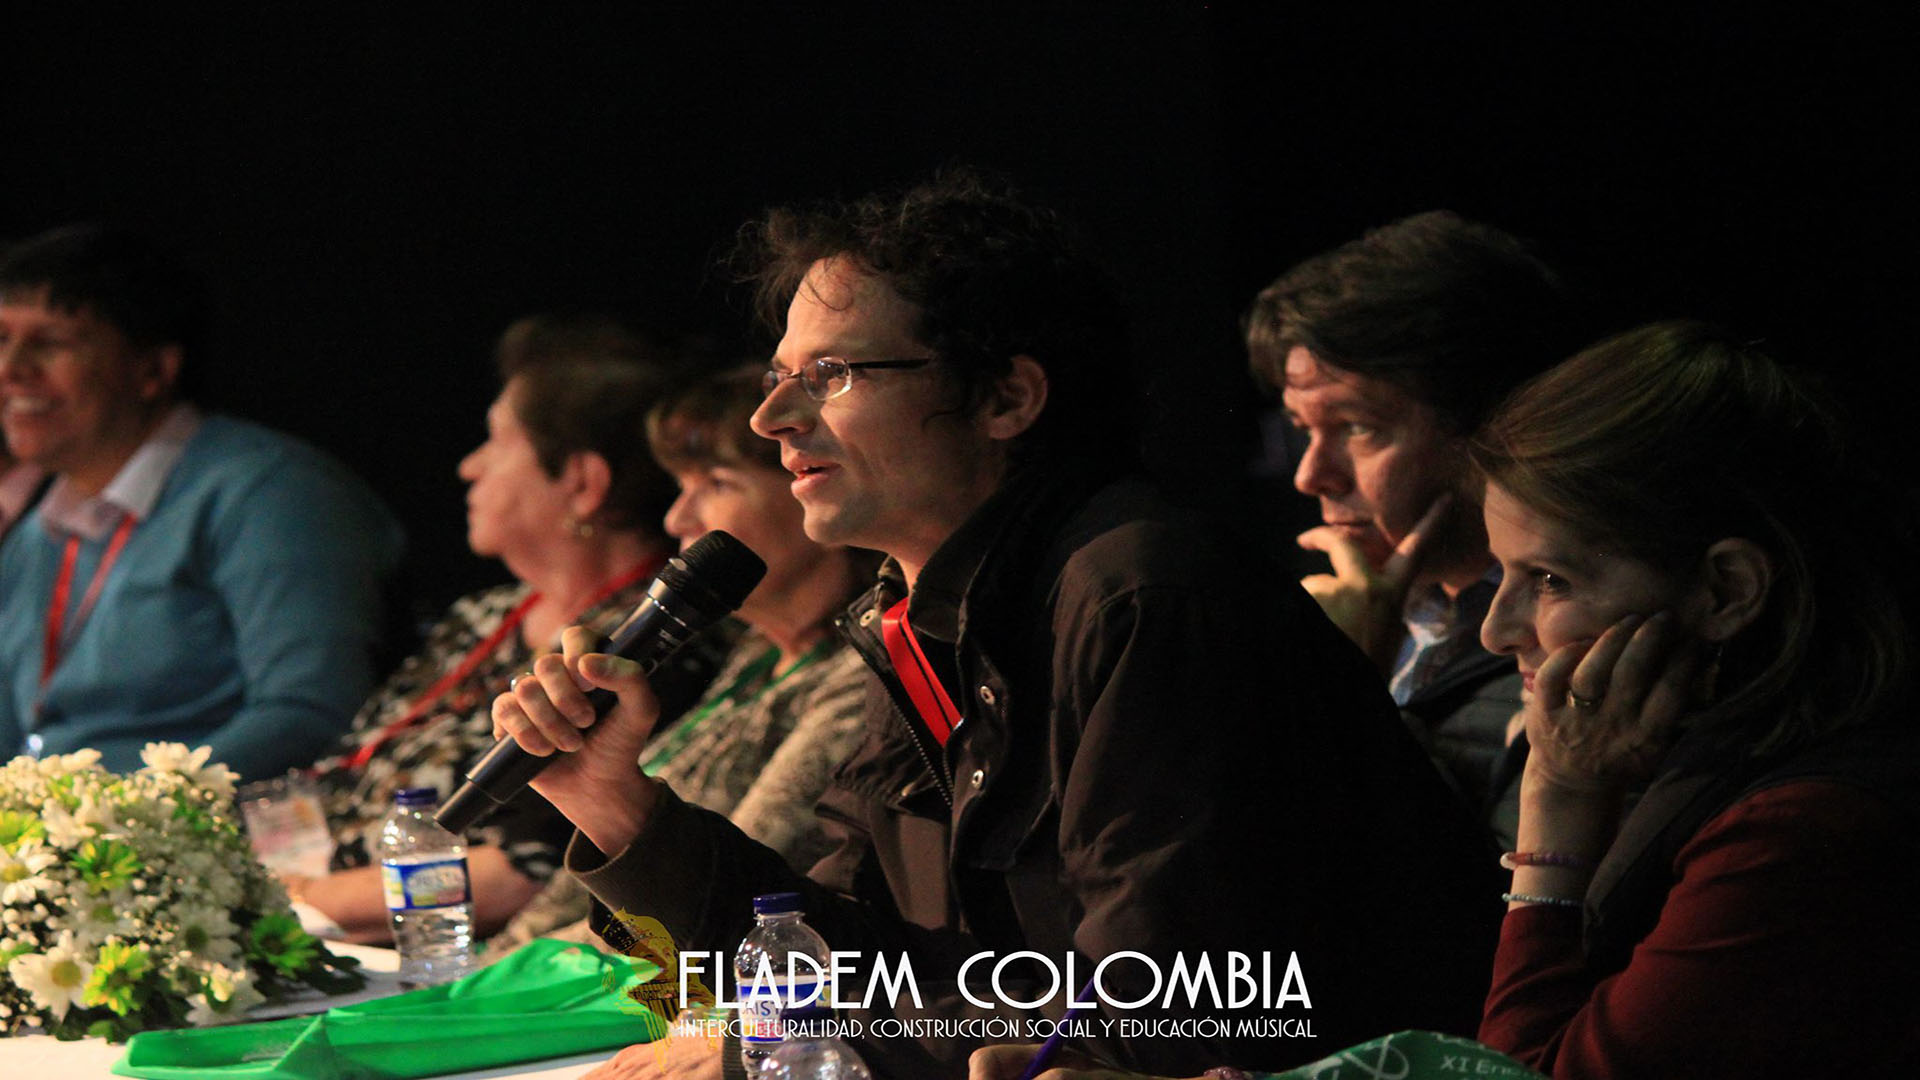 La Educacion musical en Colombia